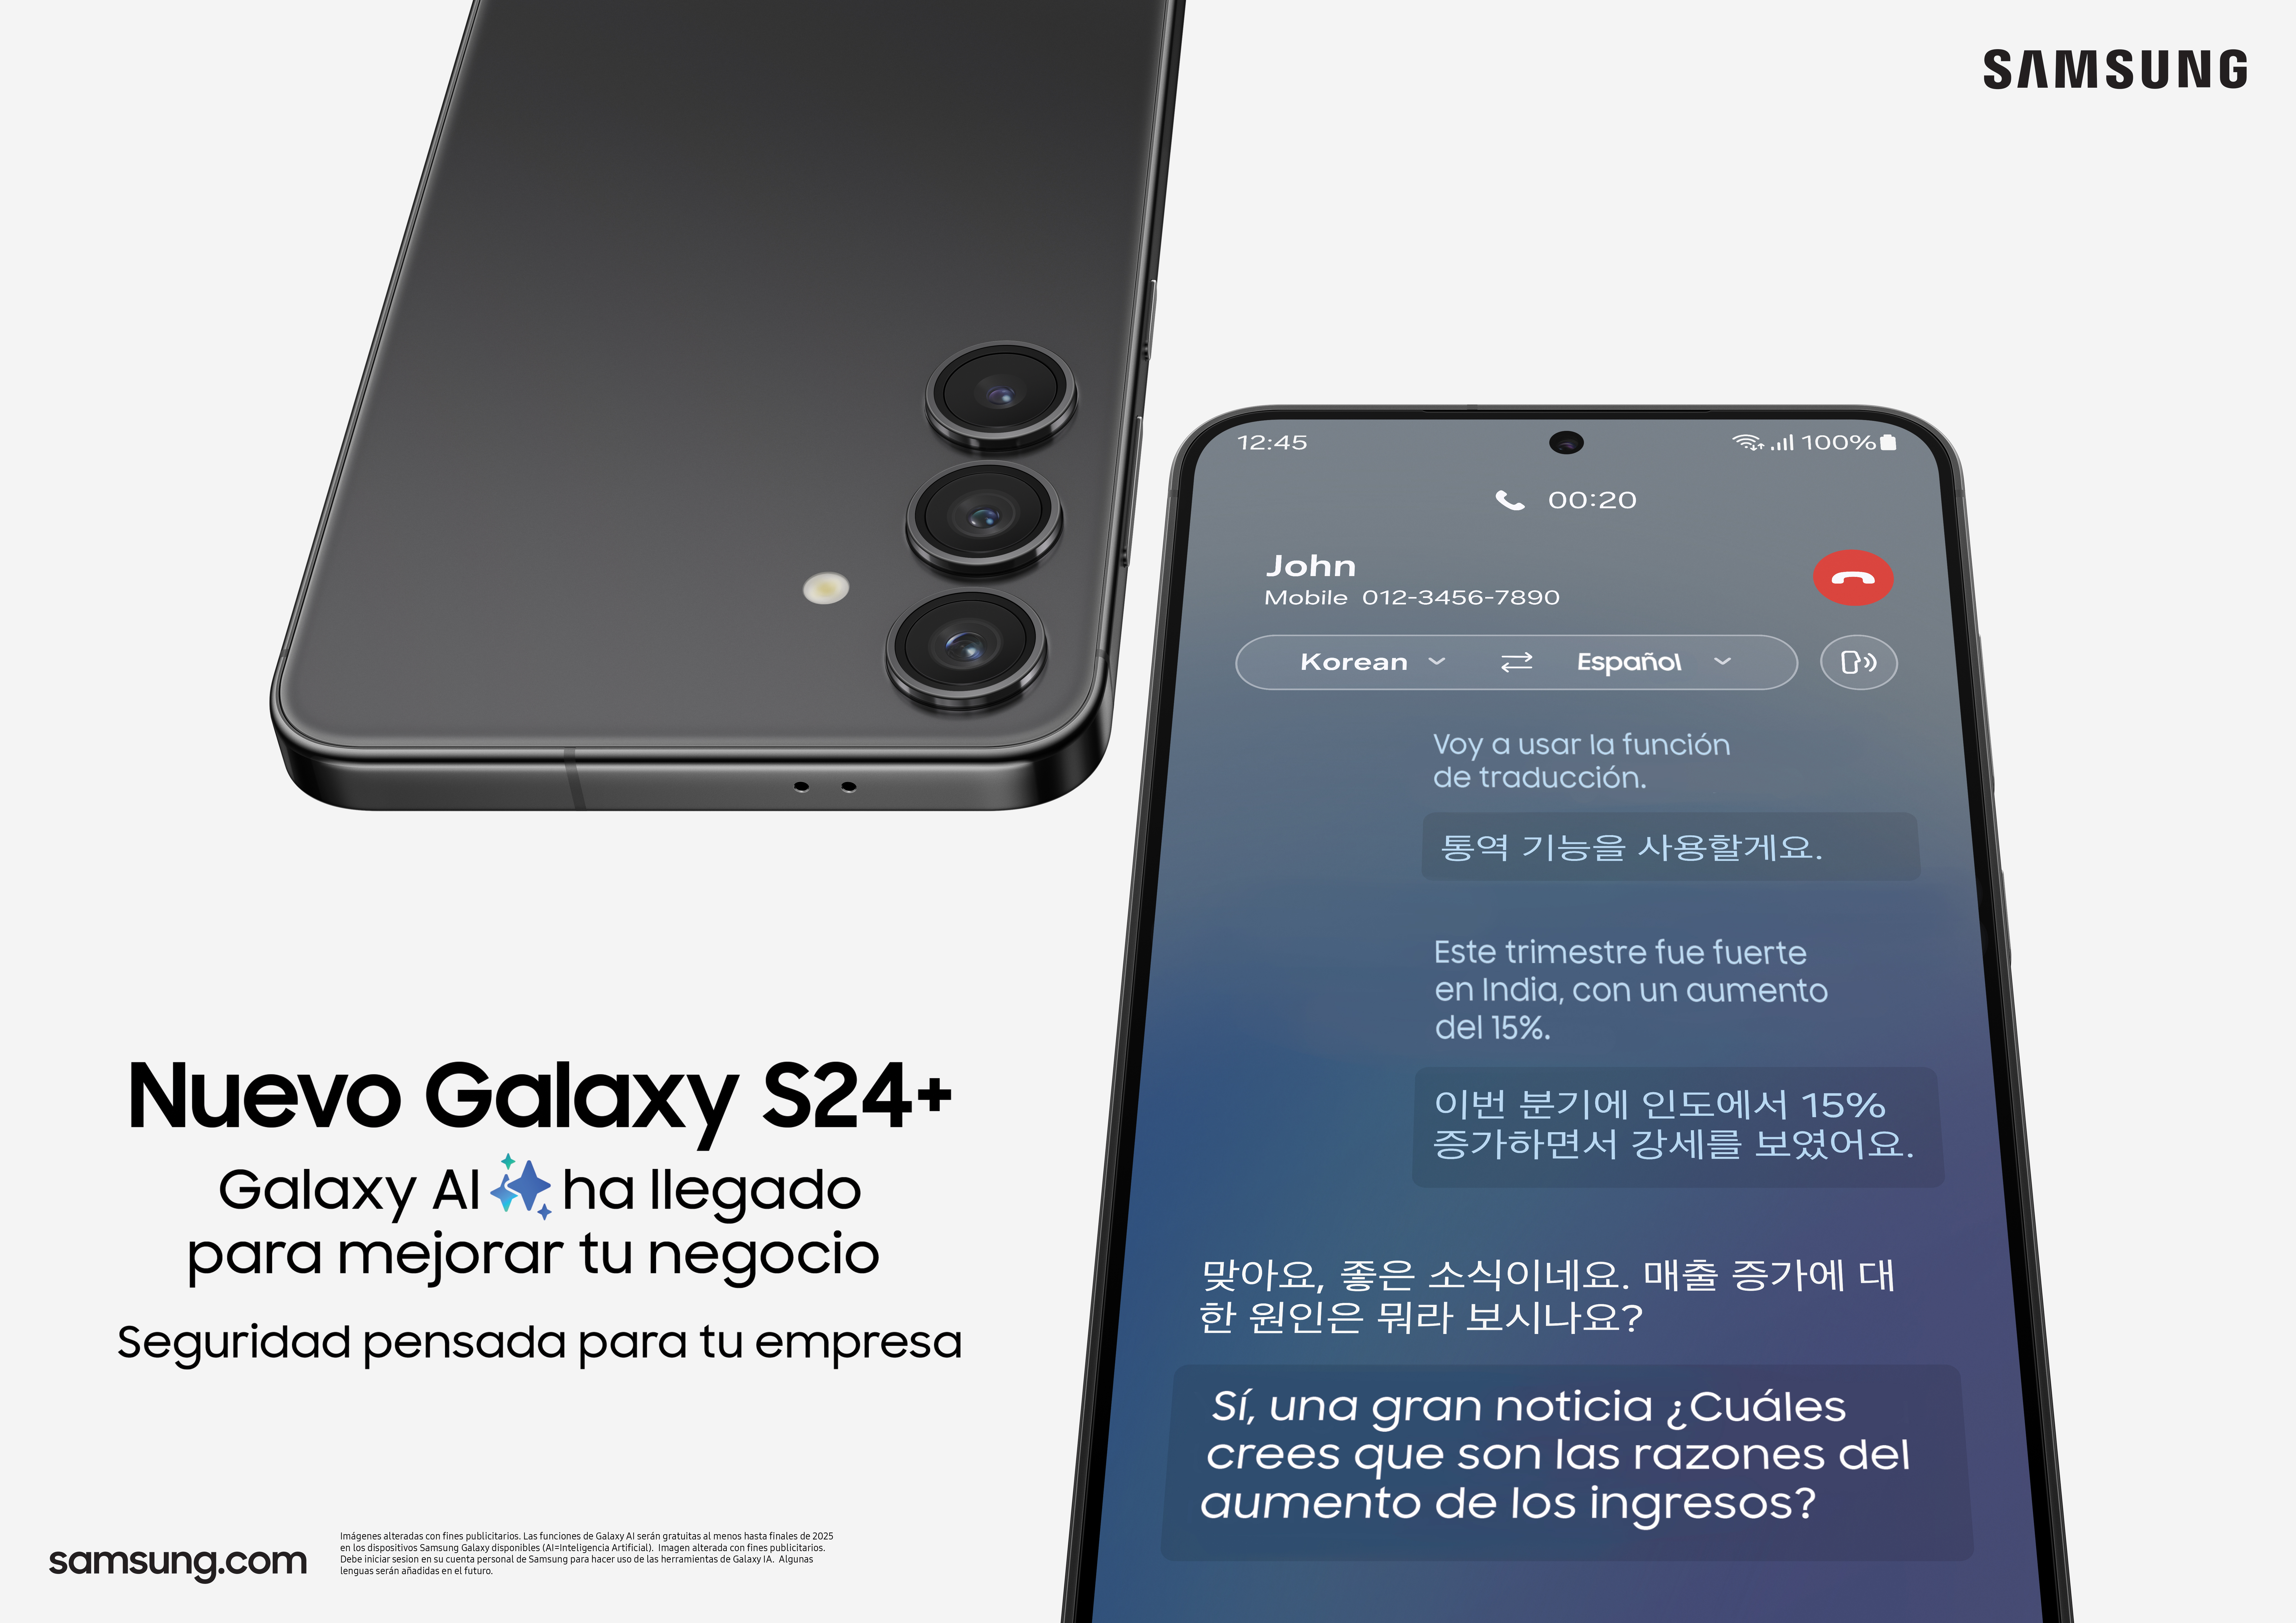 Samsung Galaxy S24: La revolución de la Inteligencia Artificial en el teléfono móvil